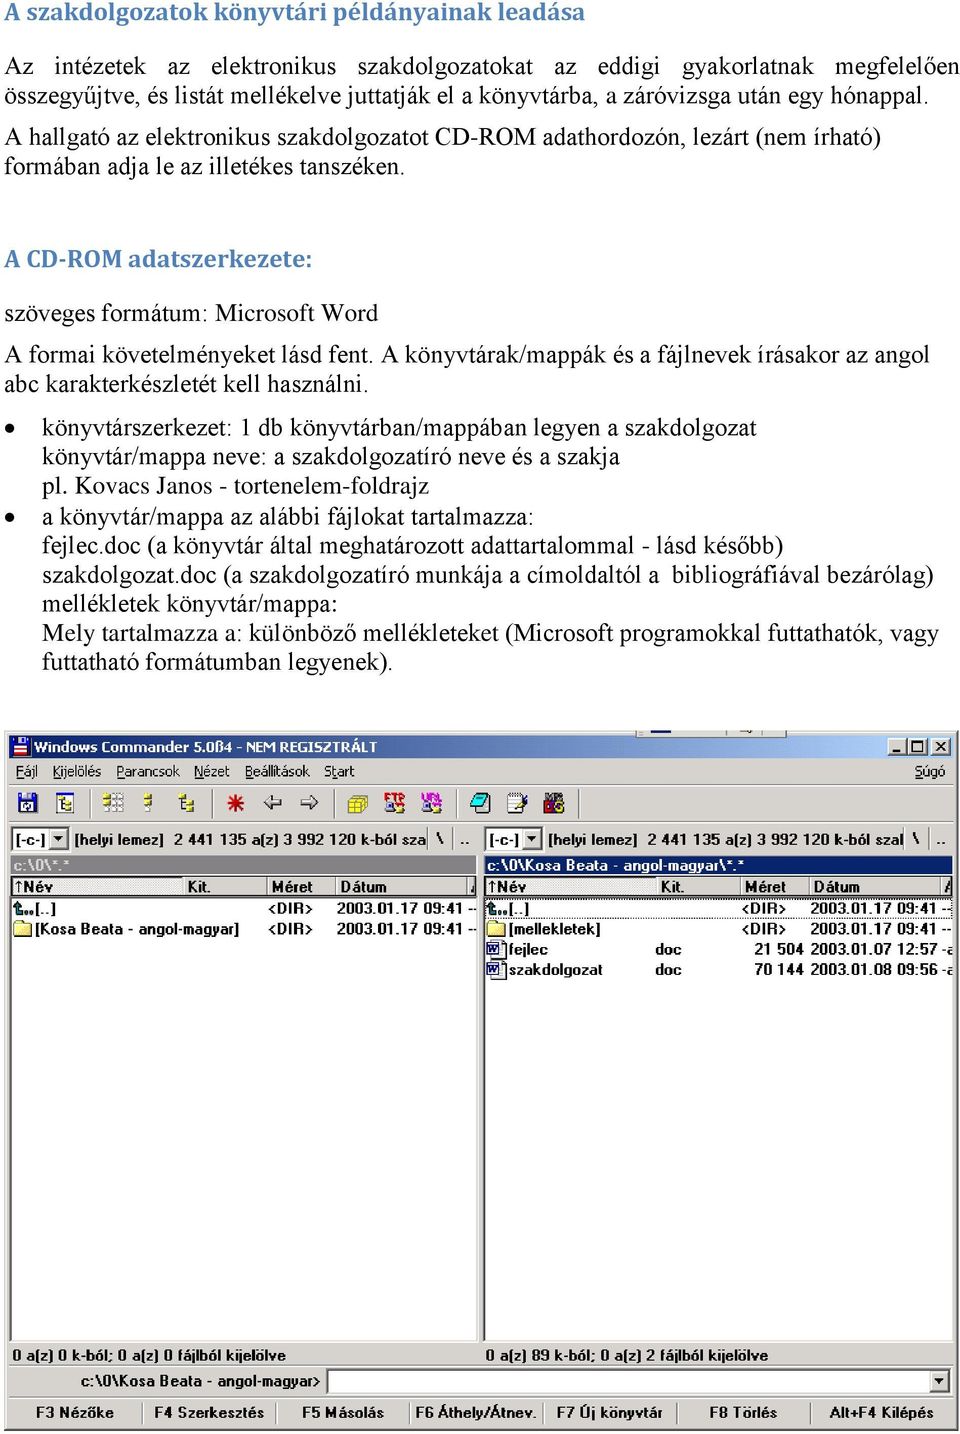 A CD-ROM adatszerkezete: szöveges formátum: Microsoft Word A formai követelményeket lásd fent. A könyvtárak/mappák és a fájlnevek írásakor az angol abc karakterkészletét kell használni.